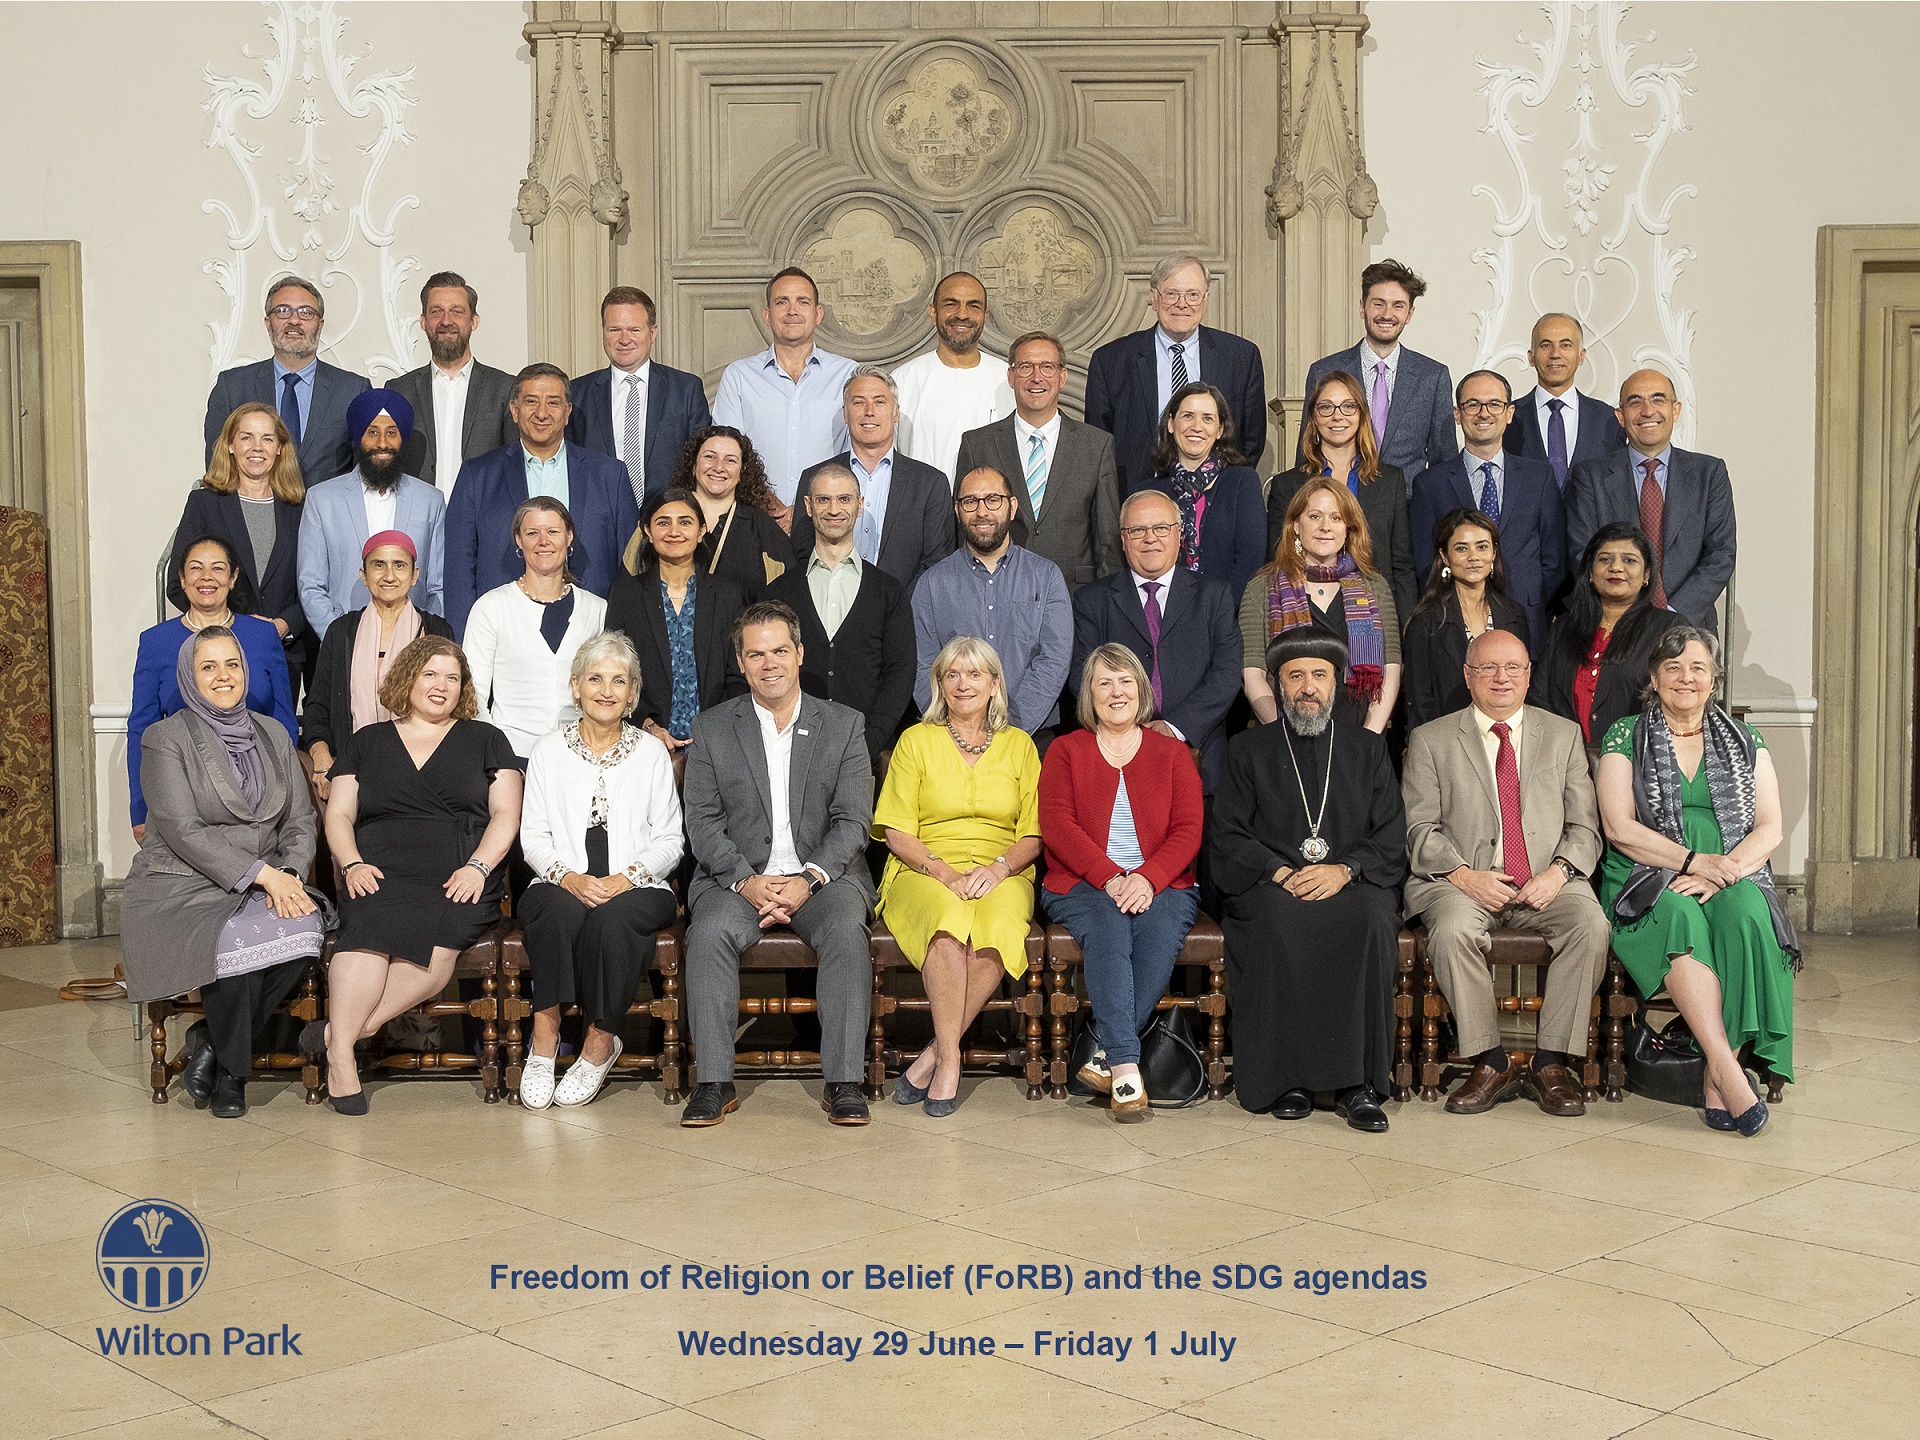 Teilnehmerinnen und Teilnehmer der Konferenz "Religions- und Weltanschauungsfreiheit und Agenda für SDGs" in Wilton Park, Großbritannien